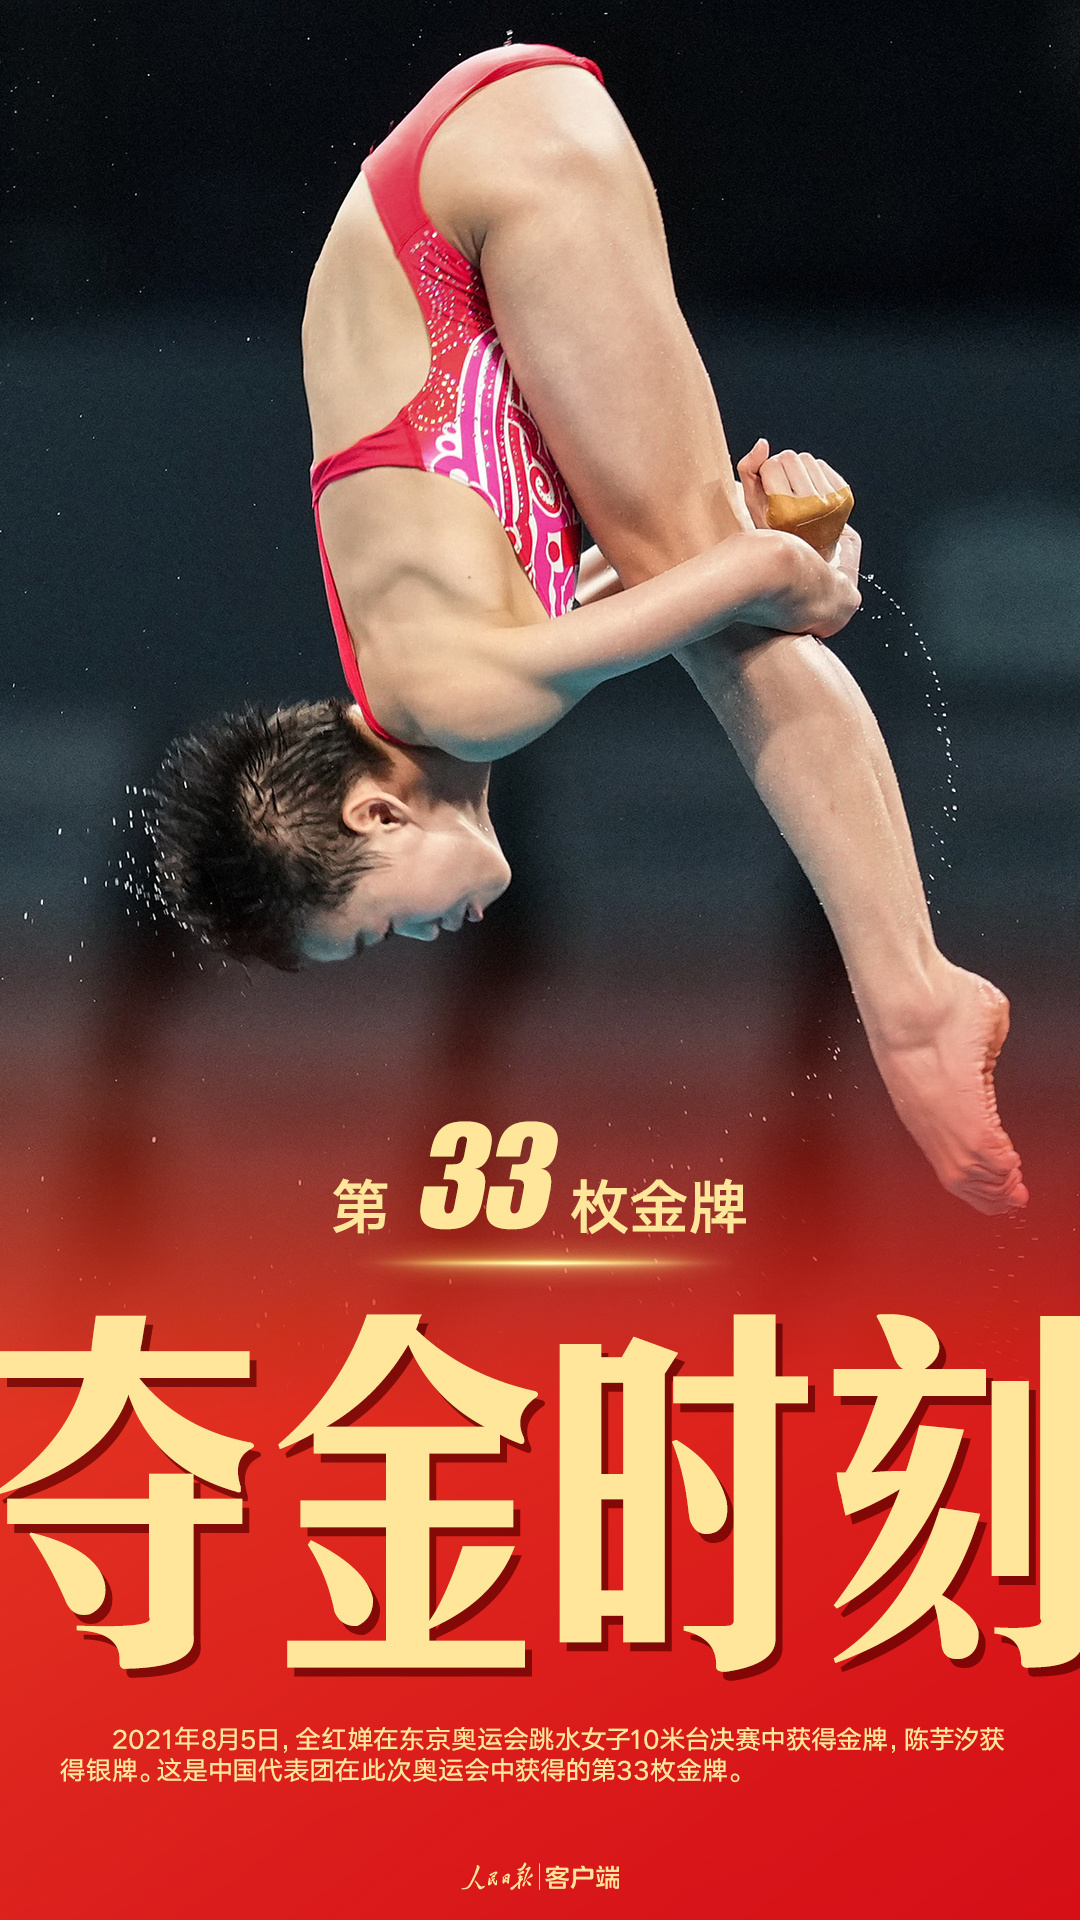 在东京奥运会跳水女子10米台决赛中,中国选手全红婵夺得金牌,这是中国